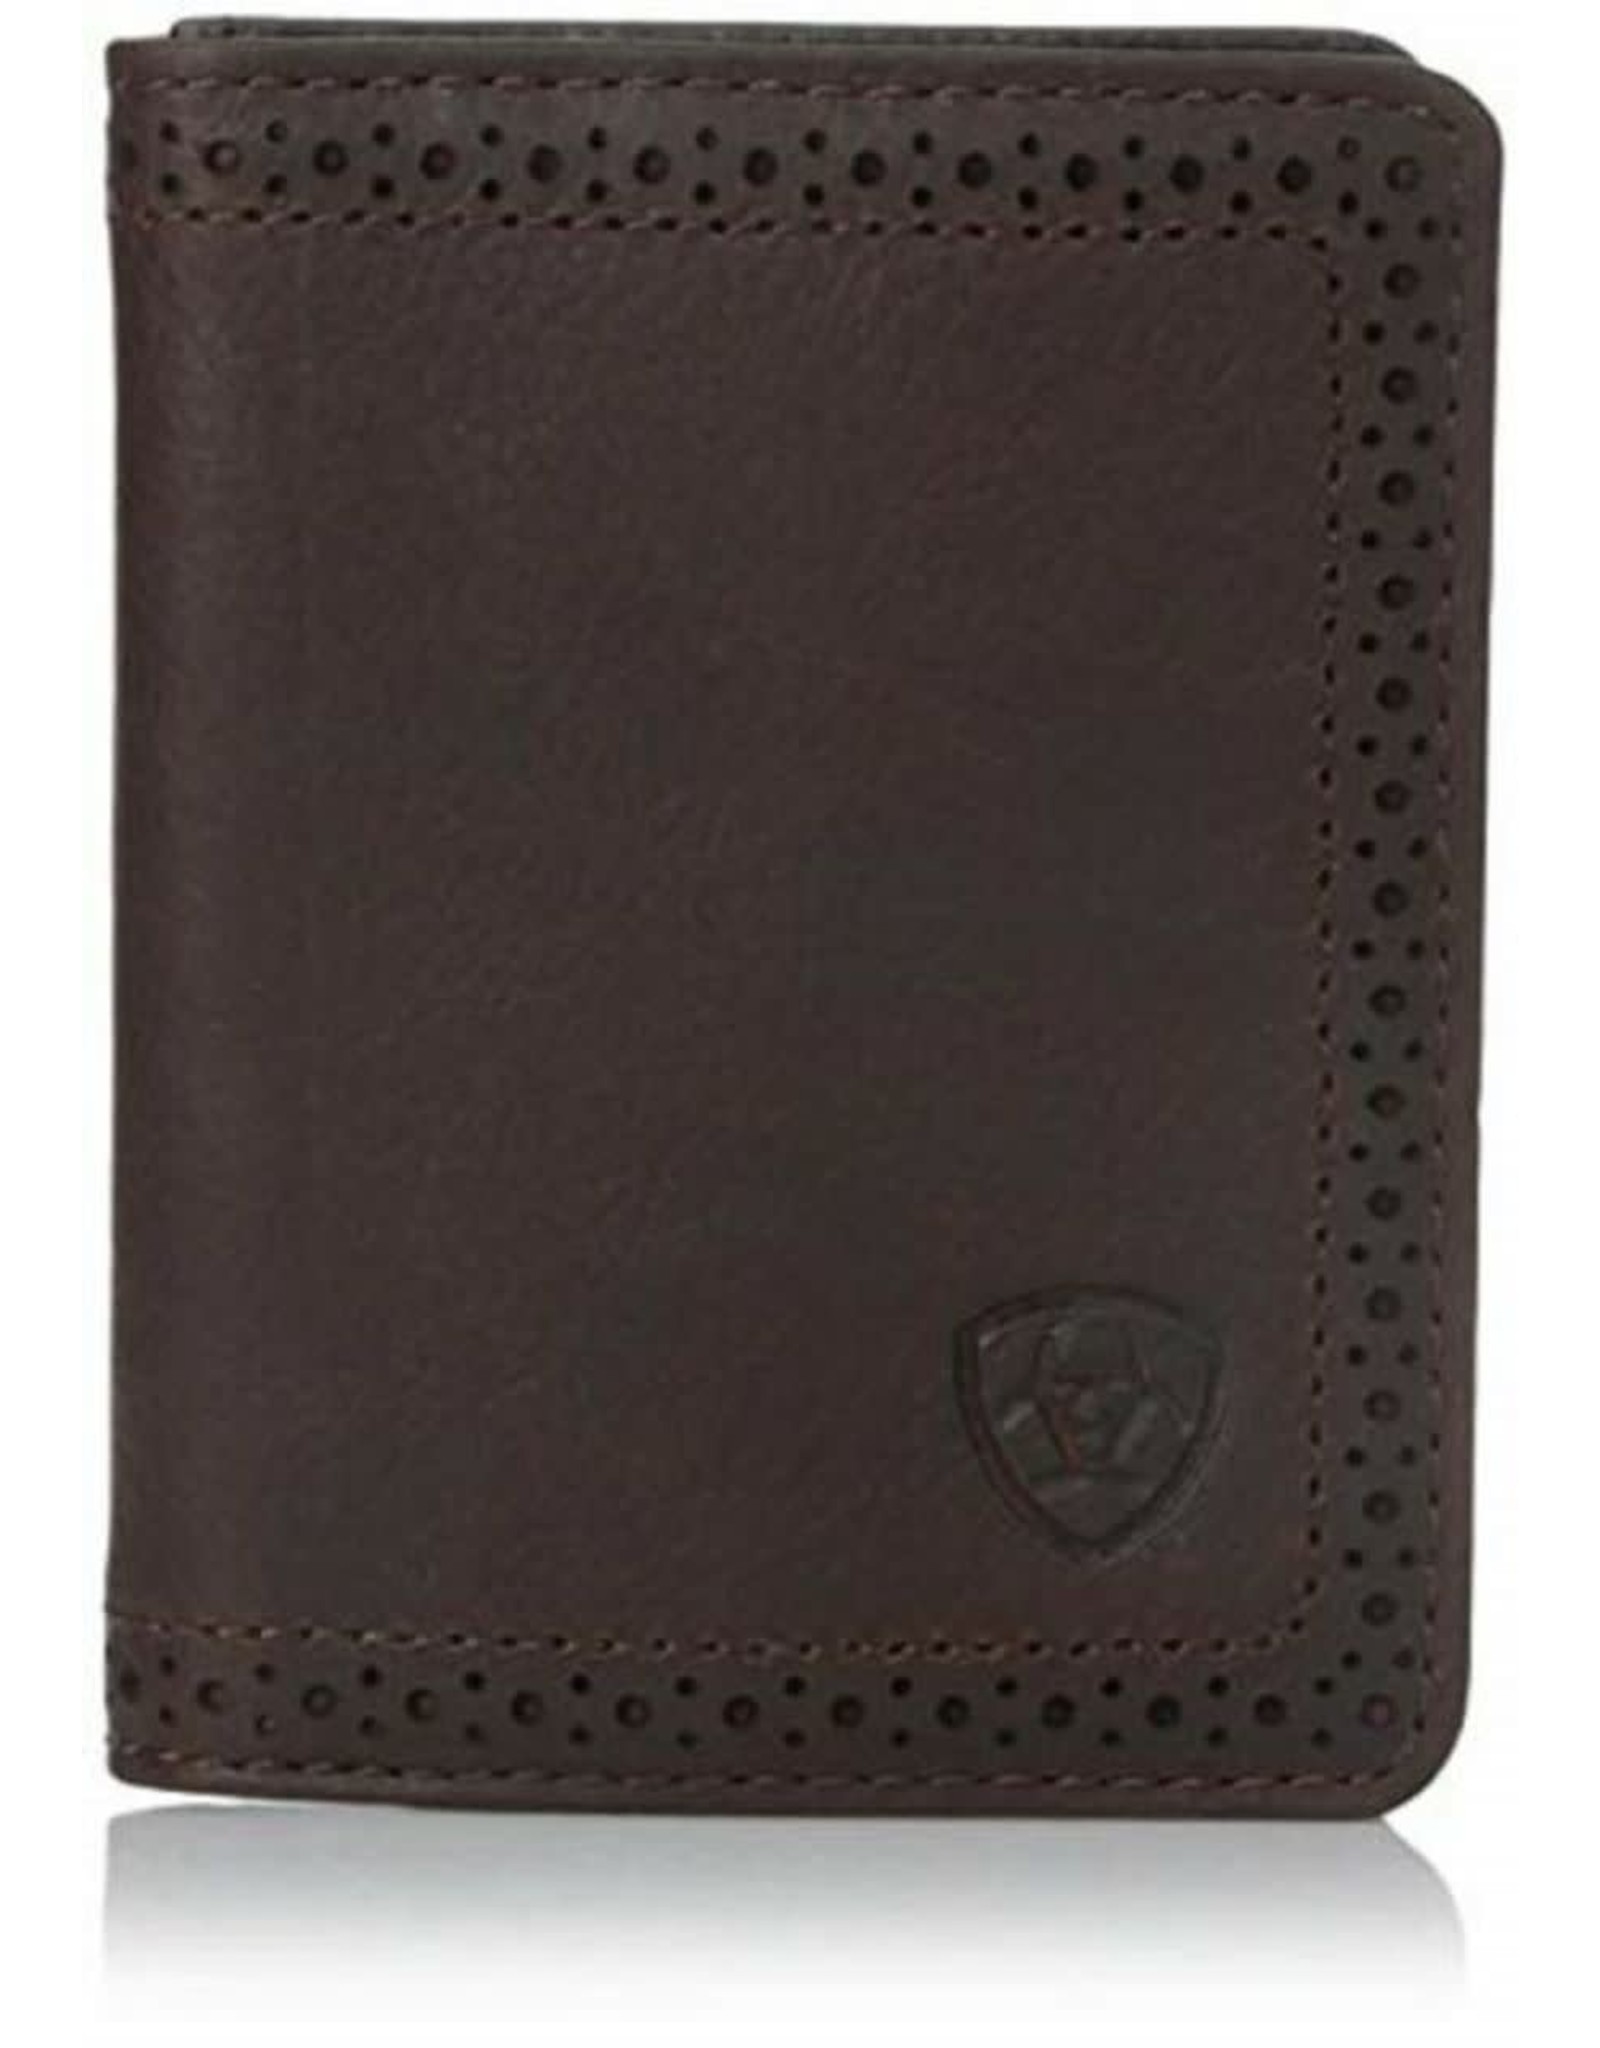 Ariat Dark Leather Bifold Wallet A35128283